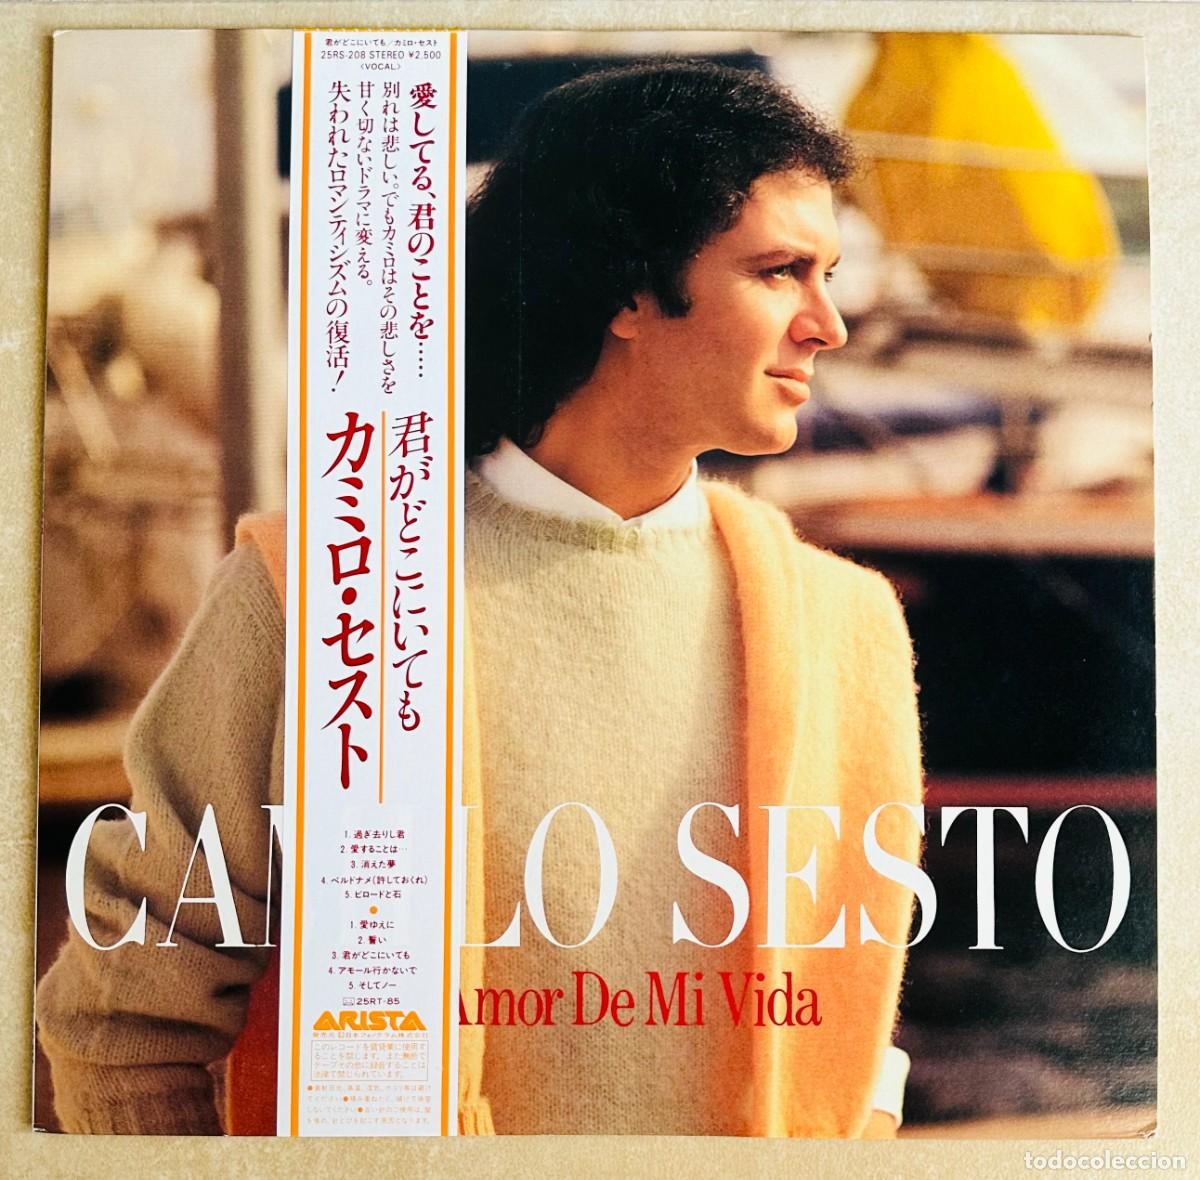 Camilo Sesto（カミロ・セスト） 「A Voluntad Del Cielo」-